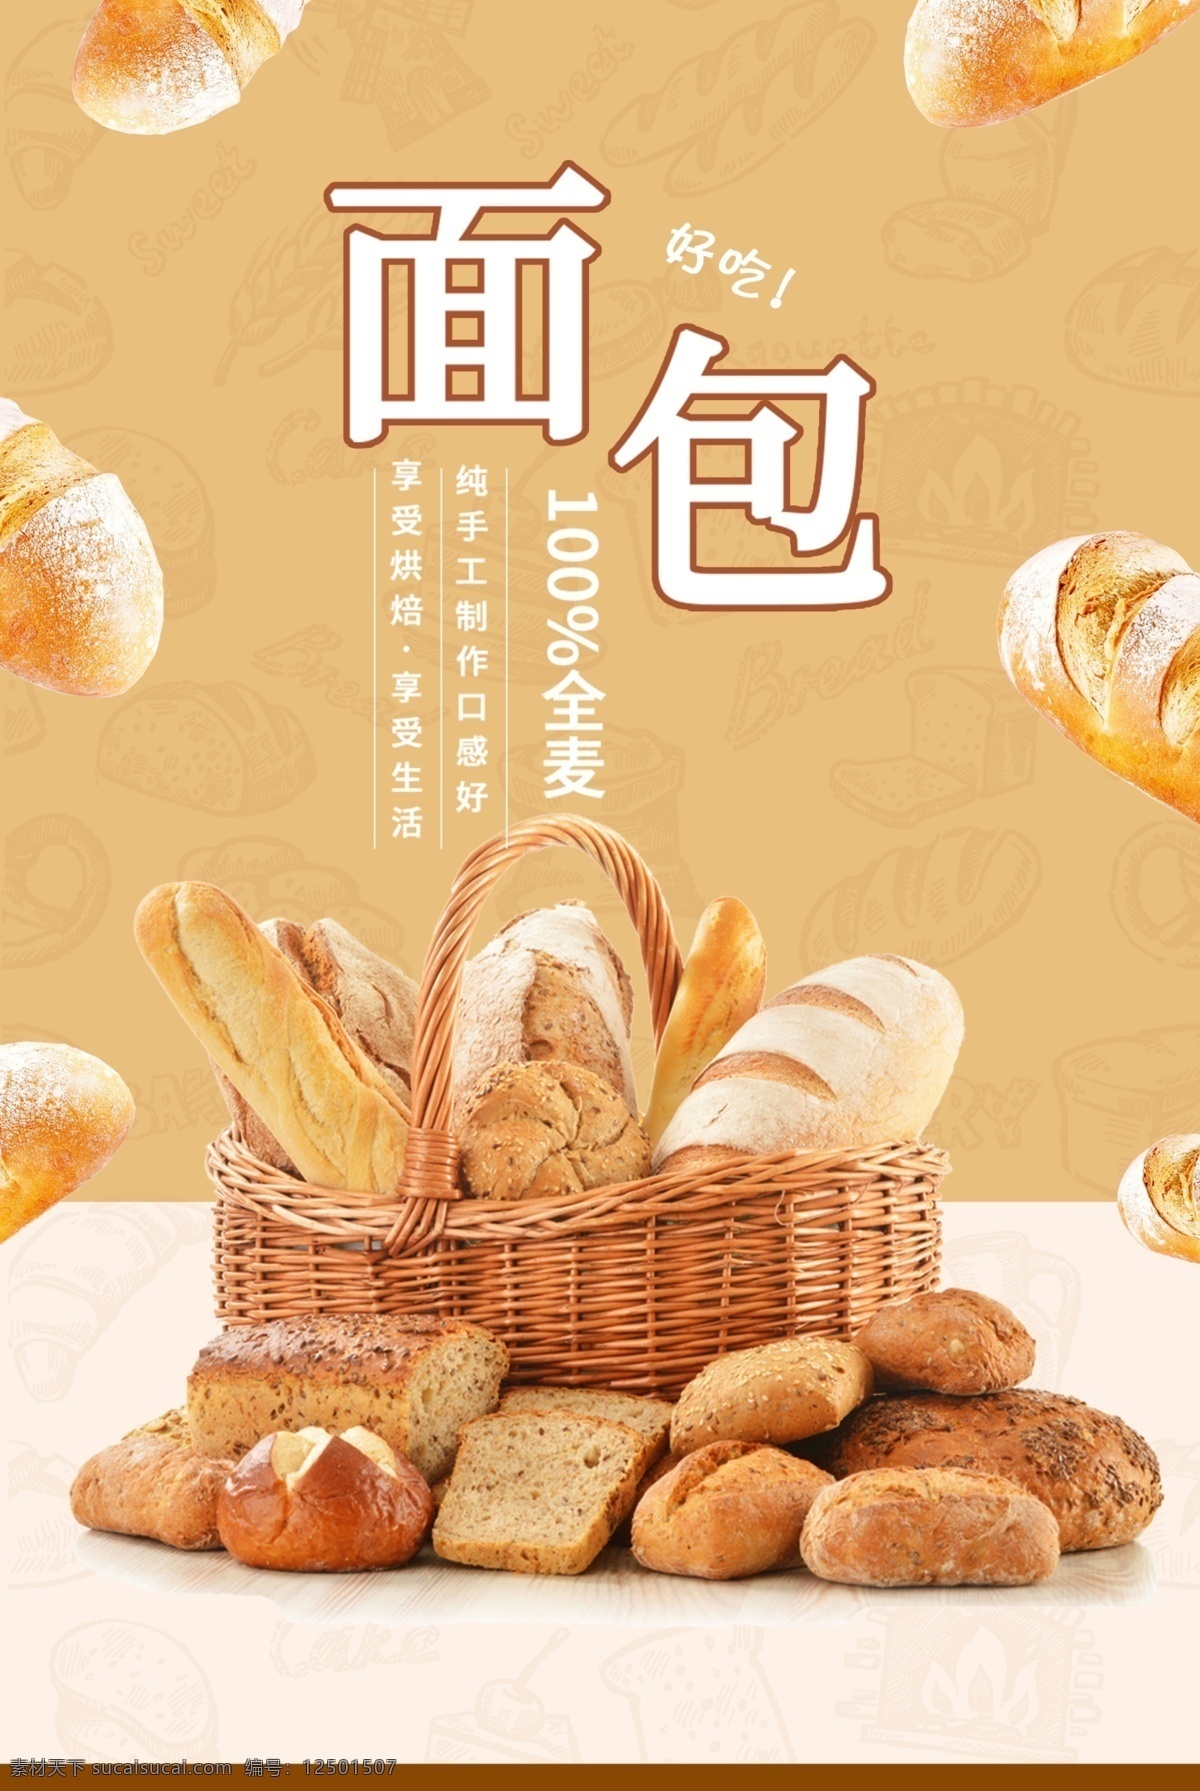 面包海报 新鲜面包 现烤面包 面包烘培 面包展板 面包文化 面包广告 面包促销 面包店 面包点心 超市 面包制作 面包蛋糕 面包房 面包订做 面包糕点 面包牛奶 面包早餐 好多面包 很多面包 面包篮子 甜品海报